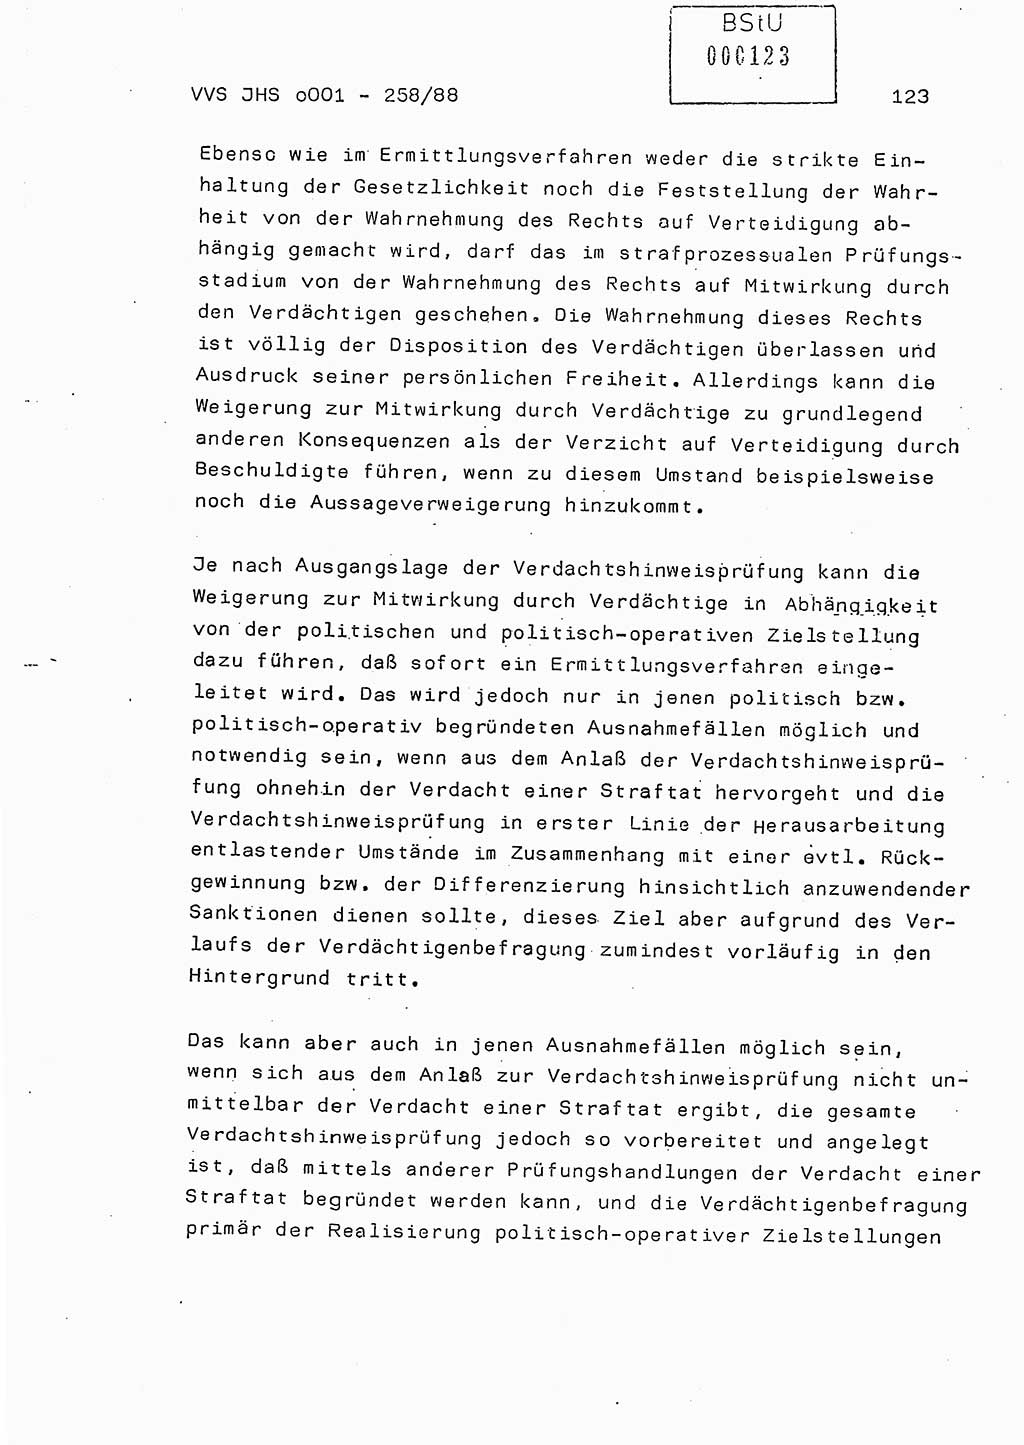 Dissertation, Oberleutnant Uwe Kärsten (JHS), Hauptmann Dr. Joachim Henkel (JHS), Oberstleutnant Werner Mählitz (Leiter der Abt. Ⅸ BV Rostock), Oberstleutnant Jürgen Tröge (HA Ⅸ/AKG), Oberstleutnant Winfried Ziegler (HA Ⅸ/9), Major Wolf-Rüdiger Wurzler (JHS), Ministerium für Staatssicherheit (MfS) [Deutsche Demokratische Republik (DDR)], Juristische Hochschule (JHS), Vertrauliche Verschlußsache (VVS) o001-258/88, Potsdam 1988, Seite 123 (Diss. MfS DDR JHS VVS o001-258/88 1988, S. 123)